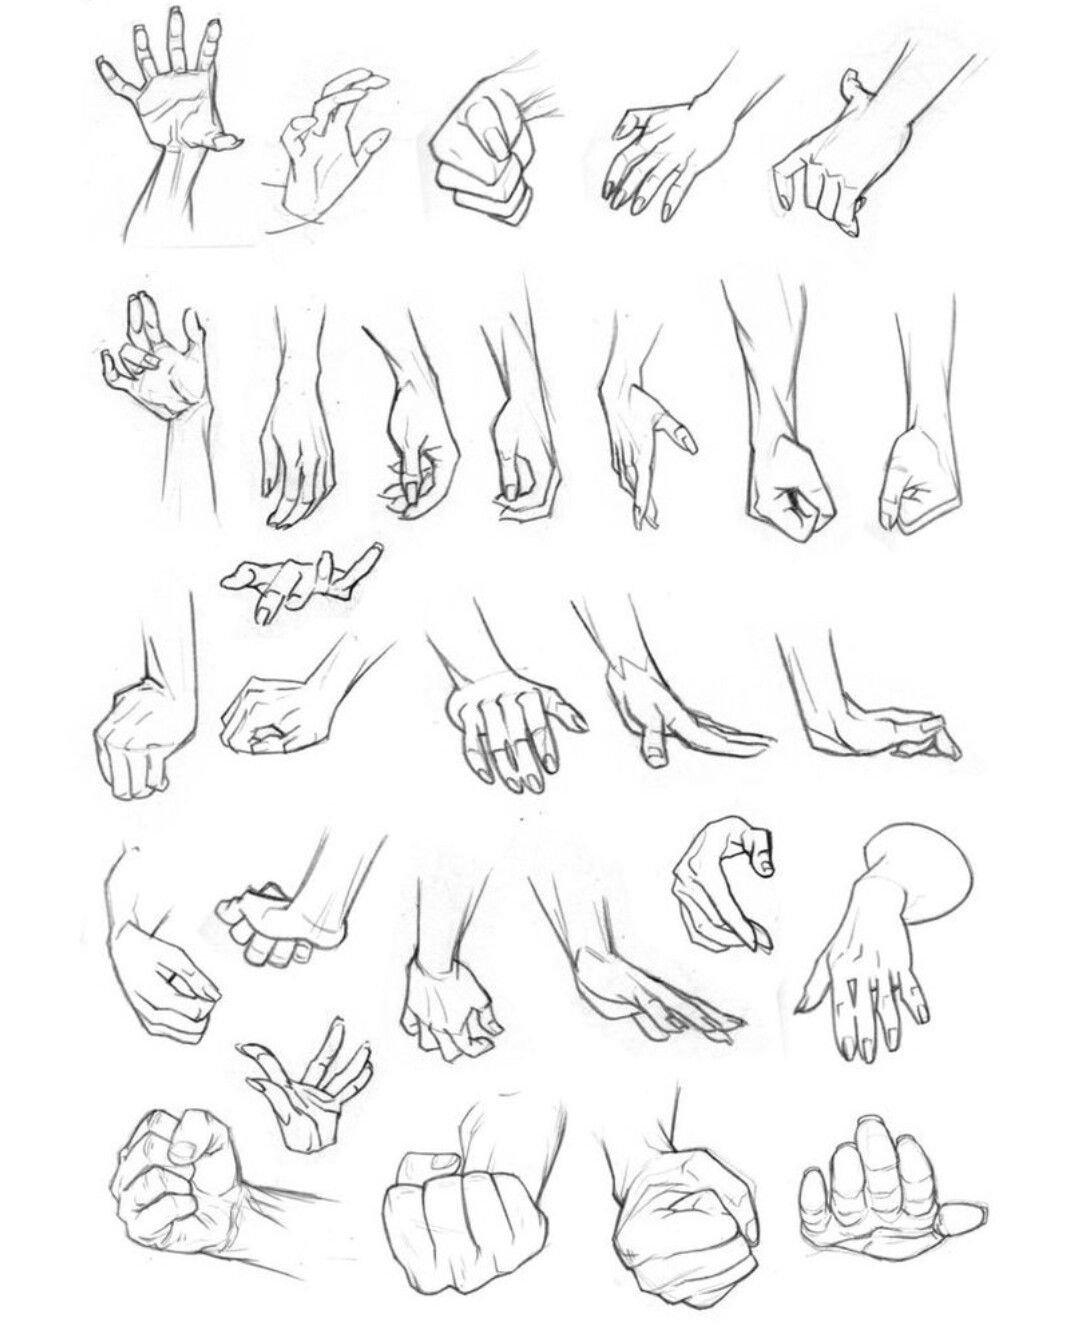 Рисование рук в разных положениях